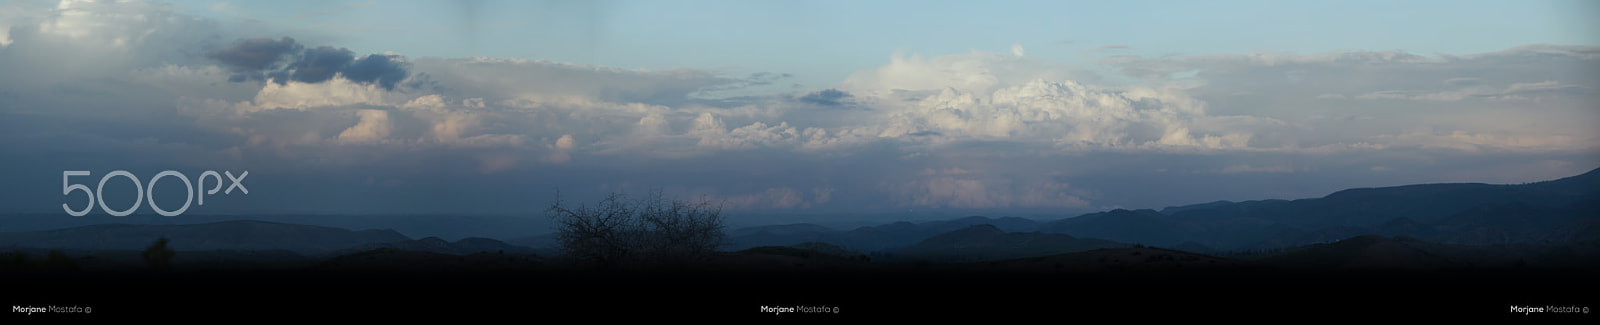 Nikon D90 sample photo. Mountains panorama photography